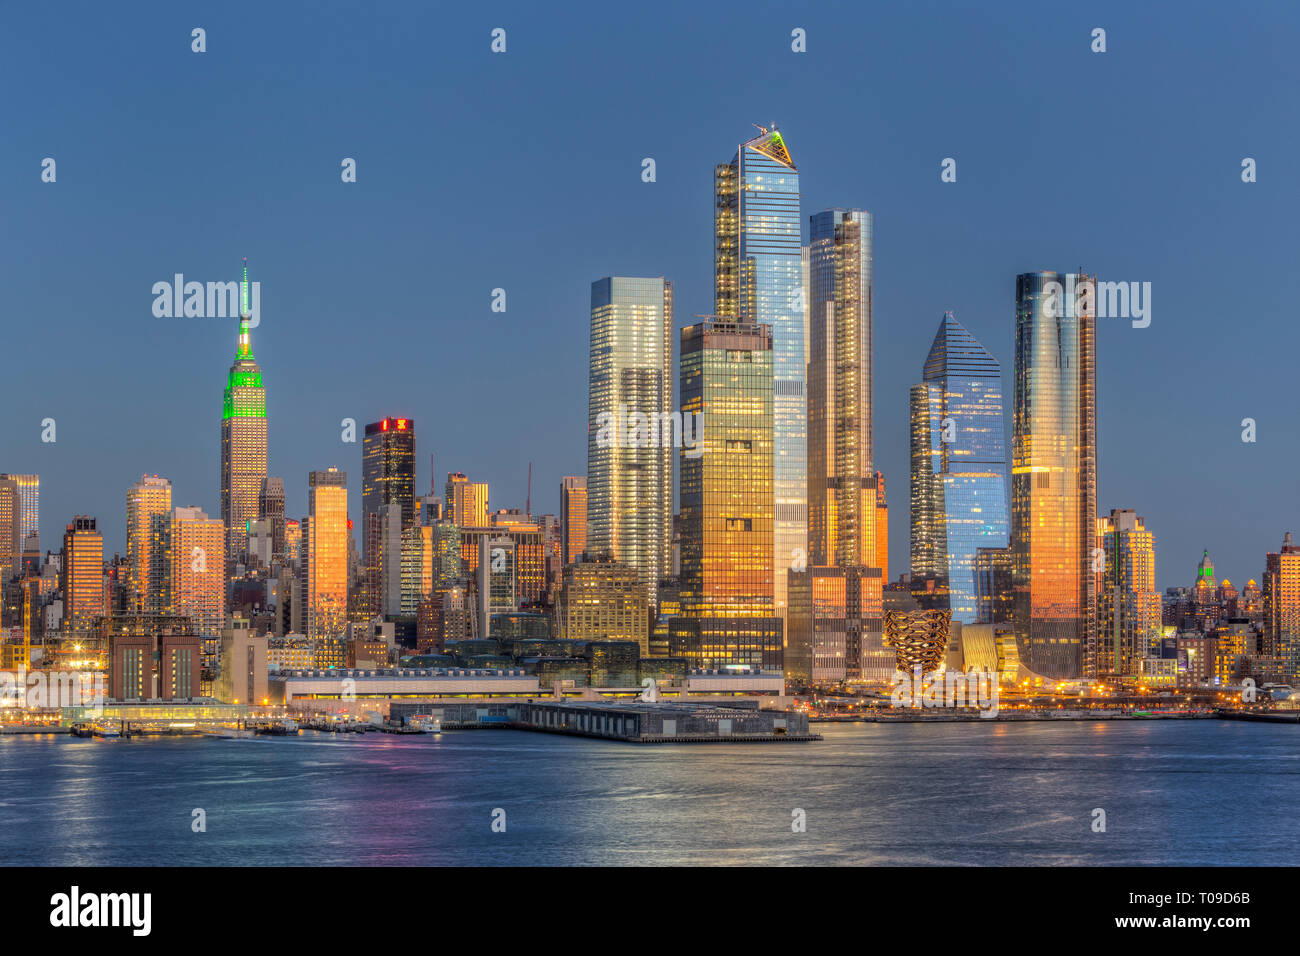 Die gemischte Hudson Yards Immobilien Development und anderen Gebäuden, die auf der West Side von Manhattan in New York City in der Dämmerung. Stockfoto